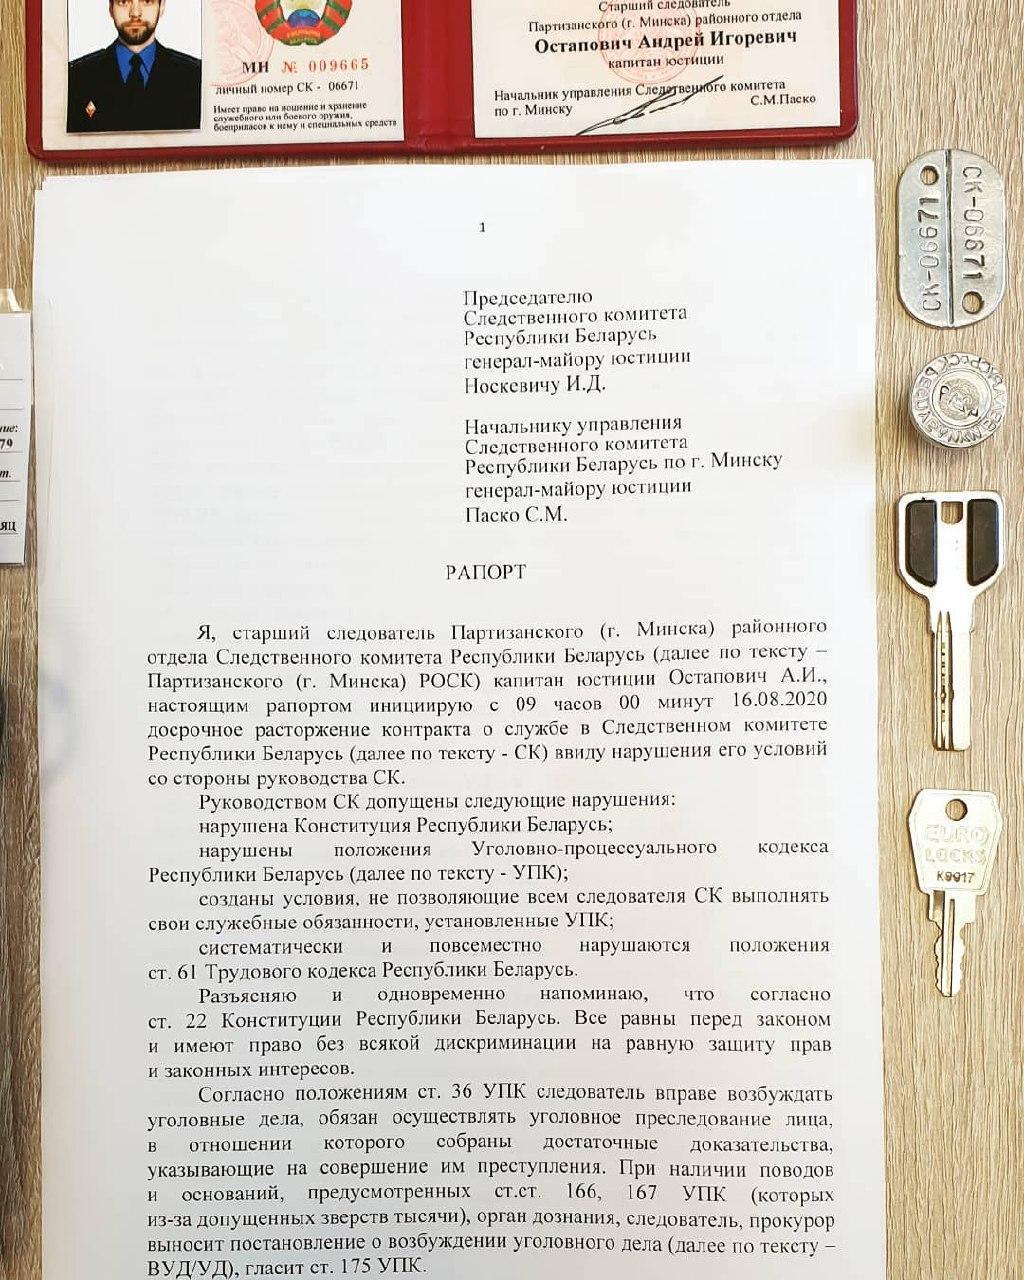 Рапорт белорусского следователя